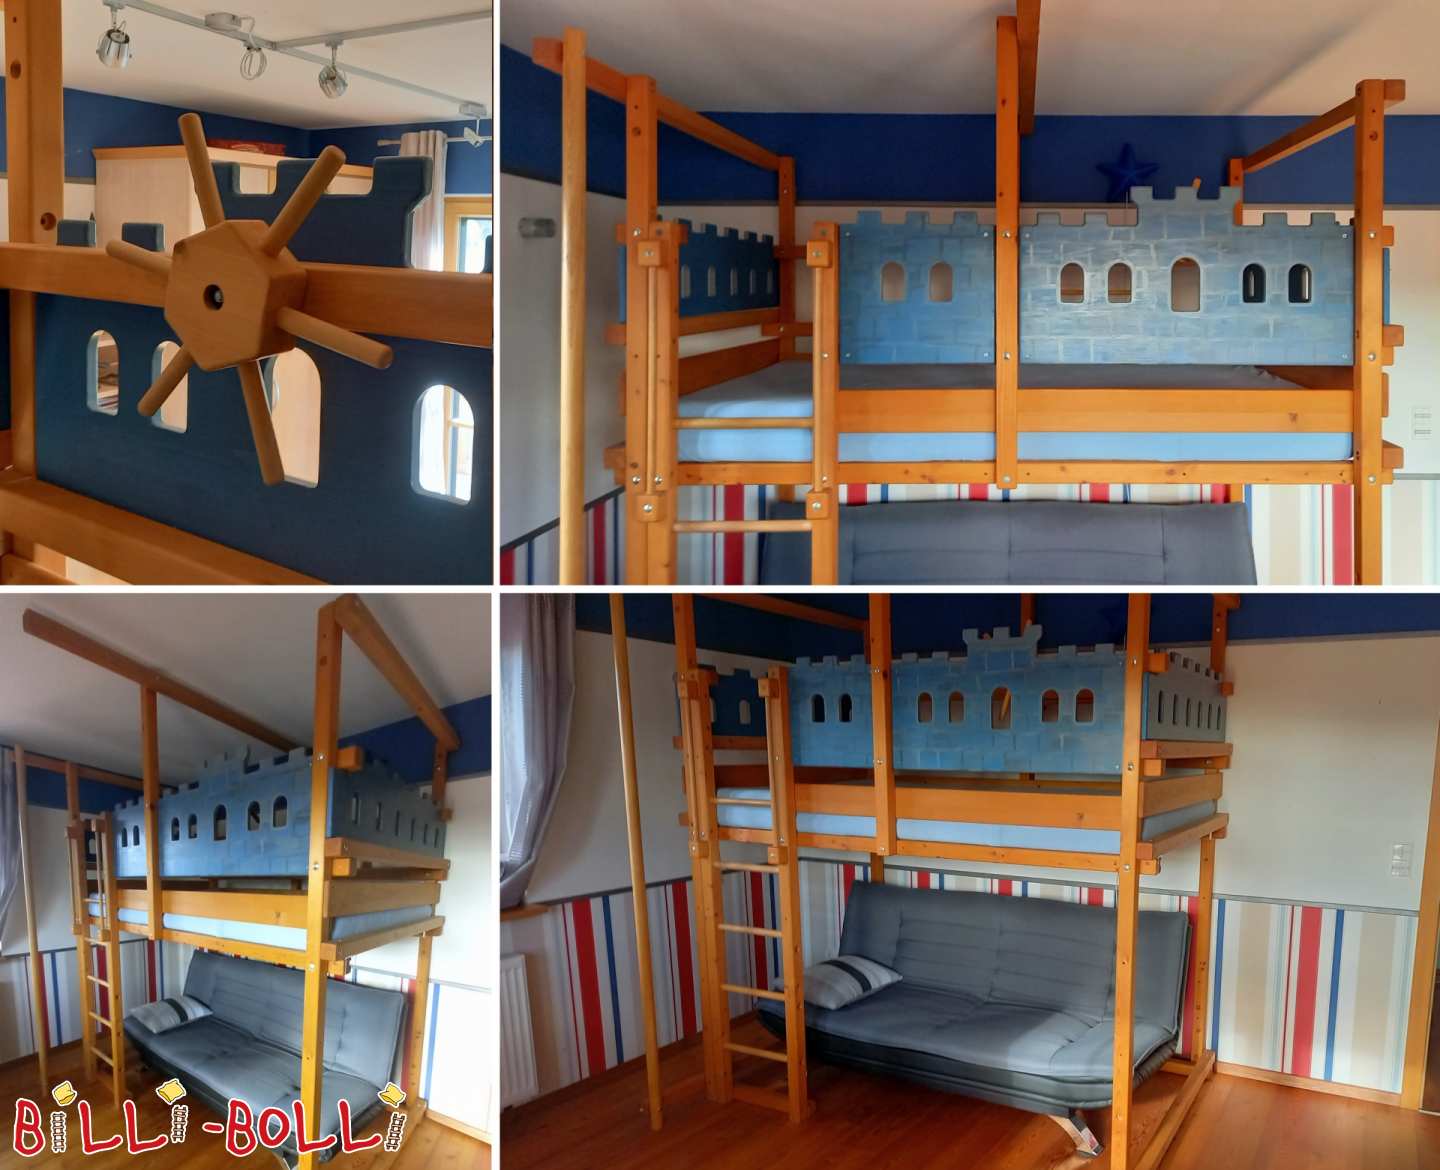 Bürstadt'ta ladinden yapılmış ekstra yüksek loft yatak 120 x 200 cm (Kategori: Çatı katı yatağı kullanılmış)